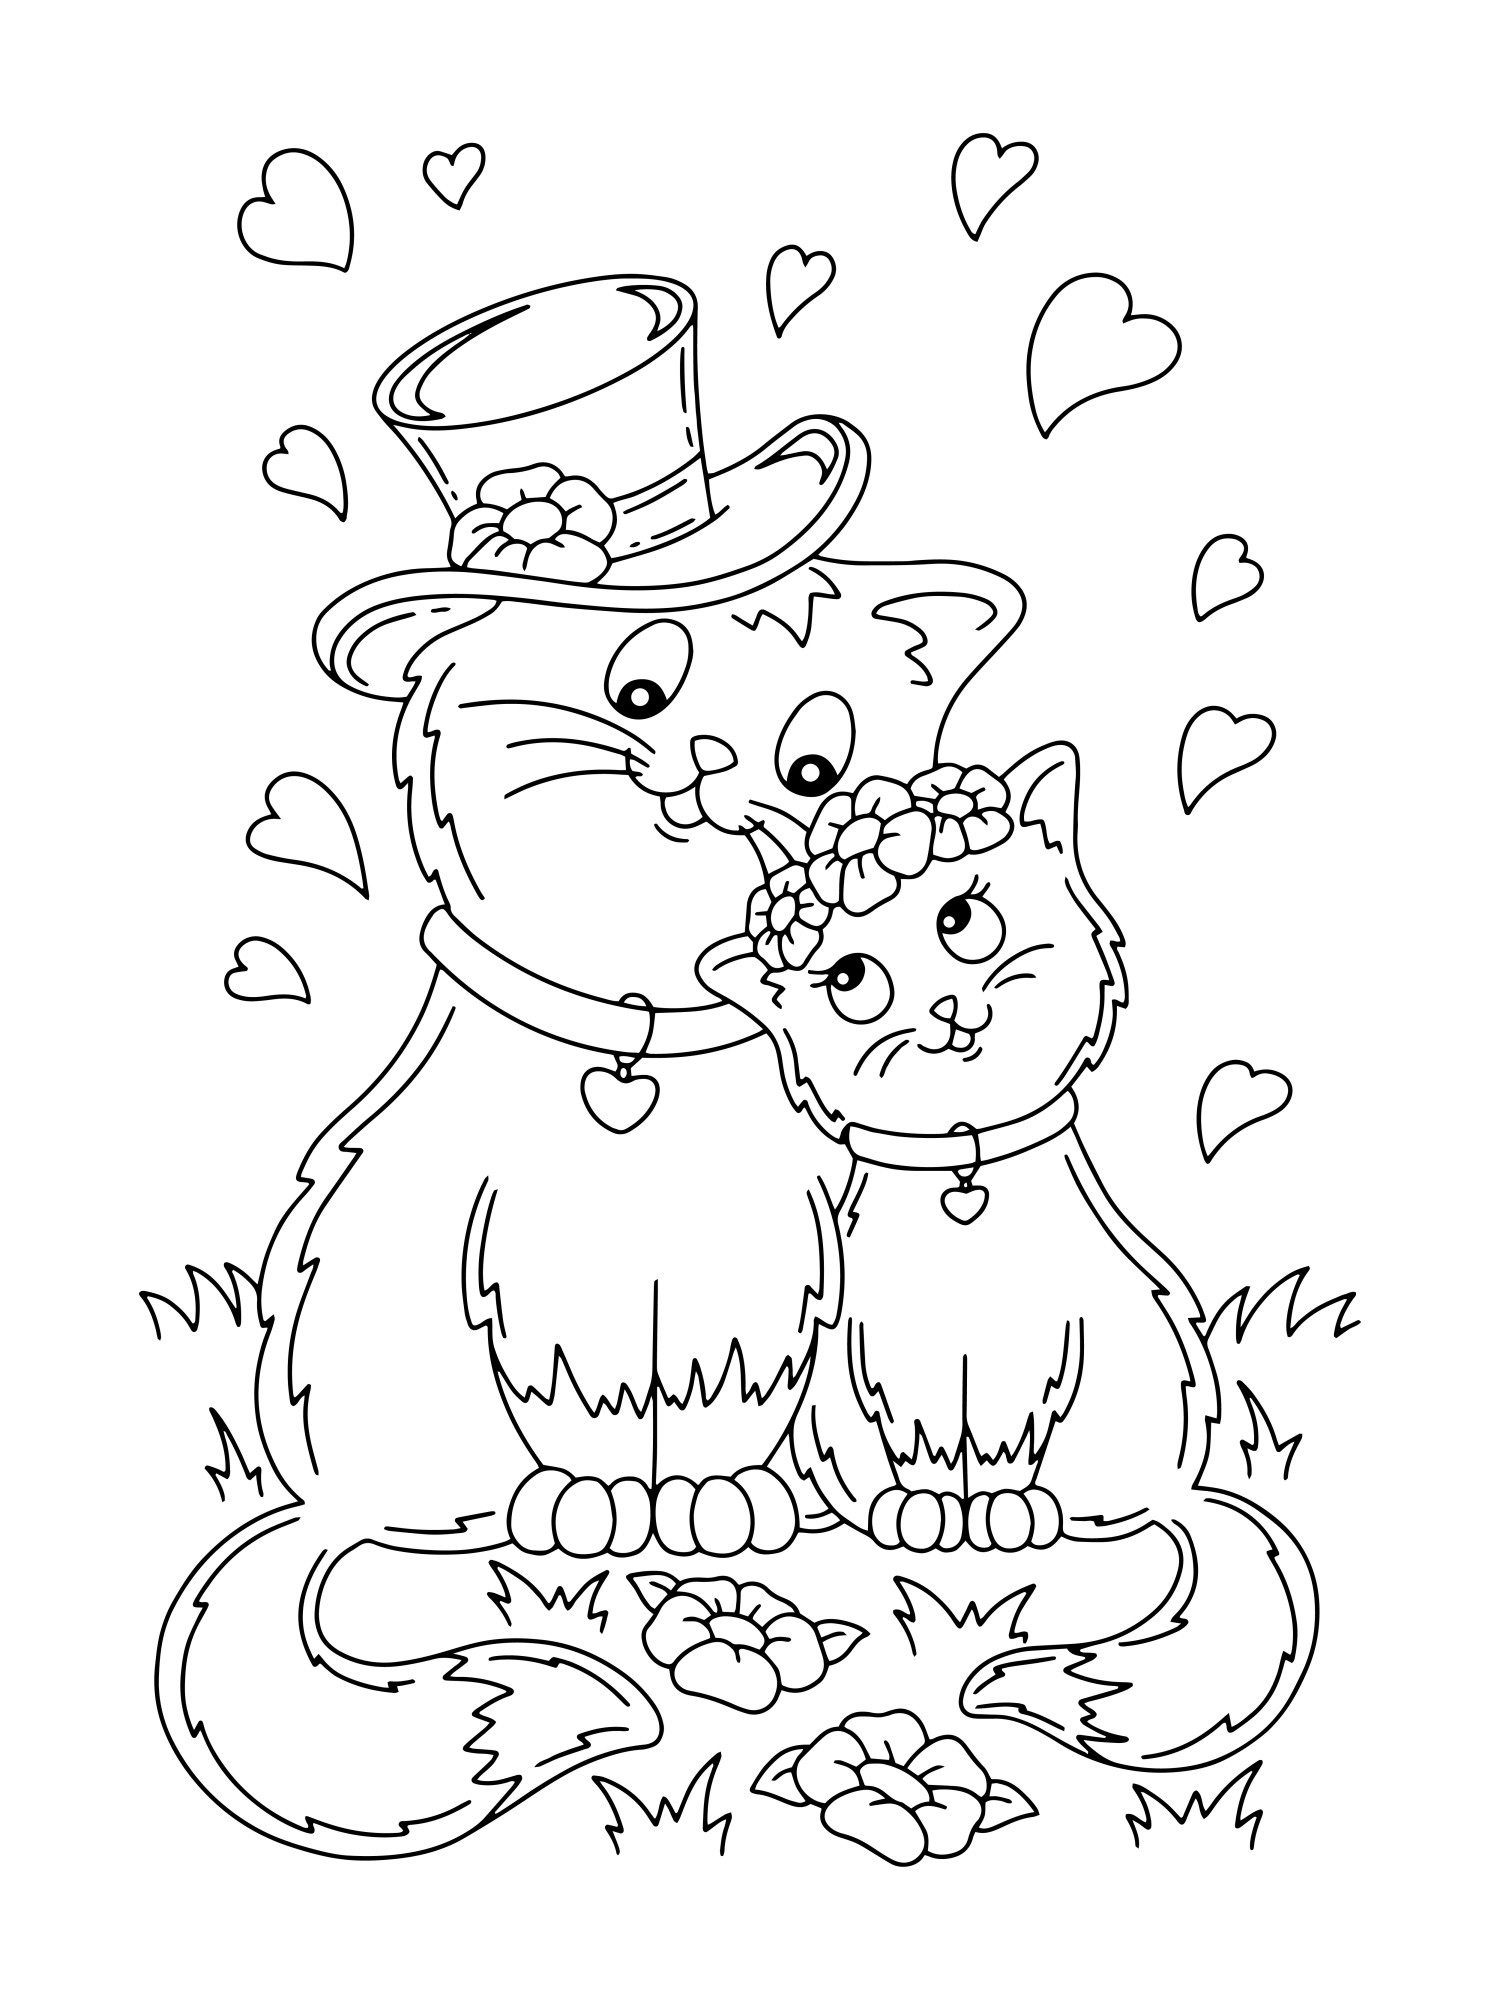 Раскраска для детей: влюбленная парочка кот и кошка в саду